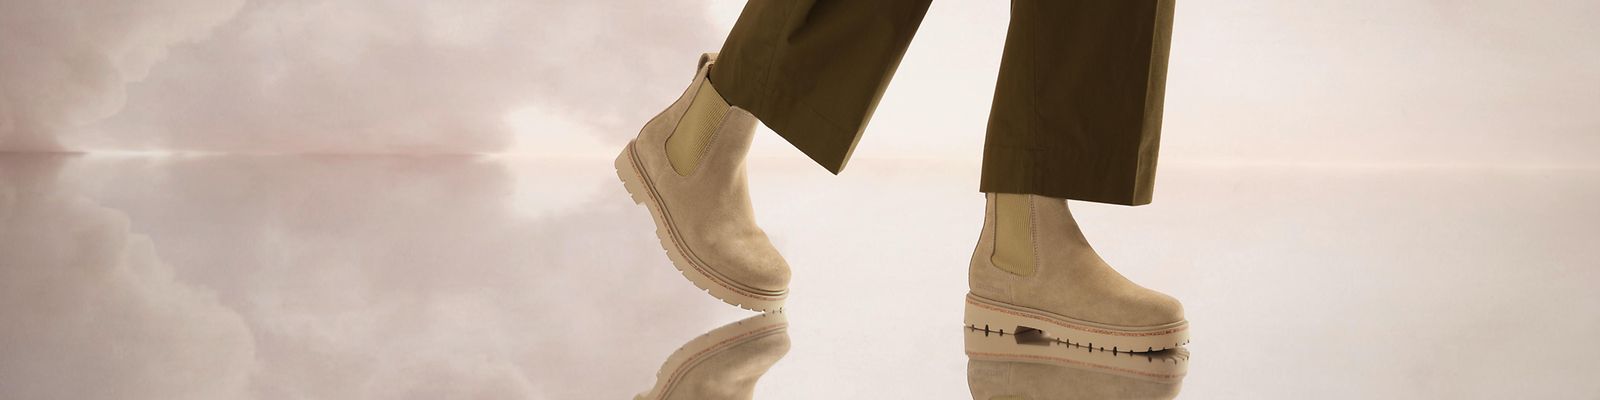 White & Brown Birkenstock Sandals - Dripside Customs UK